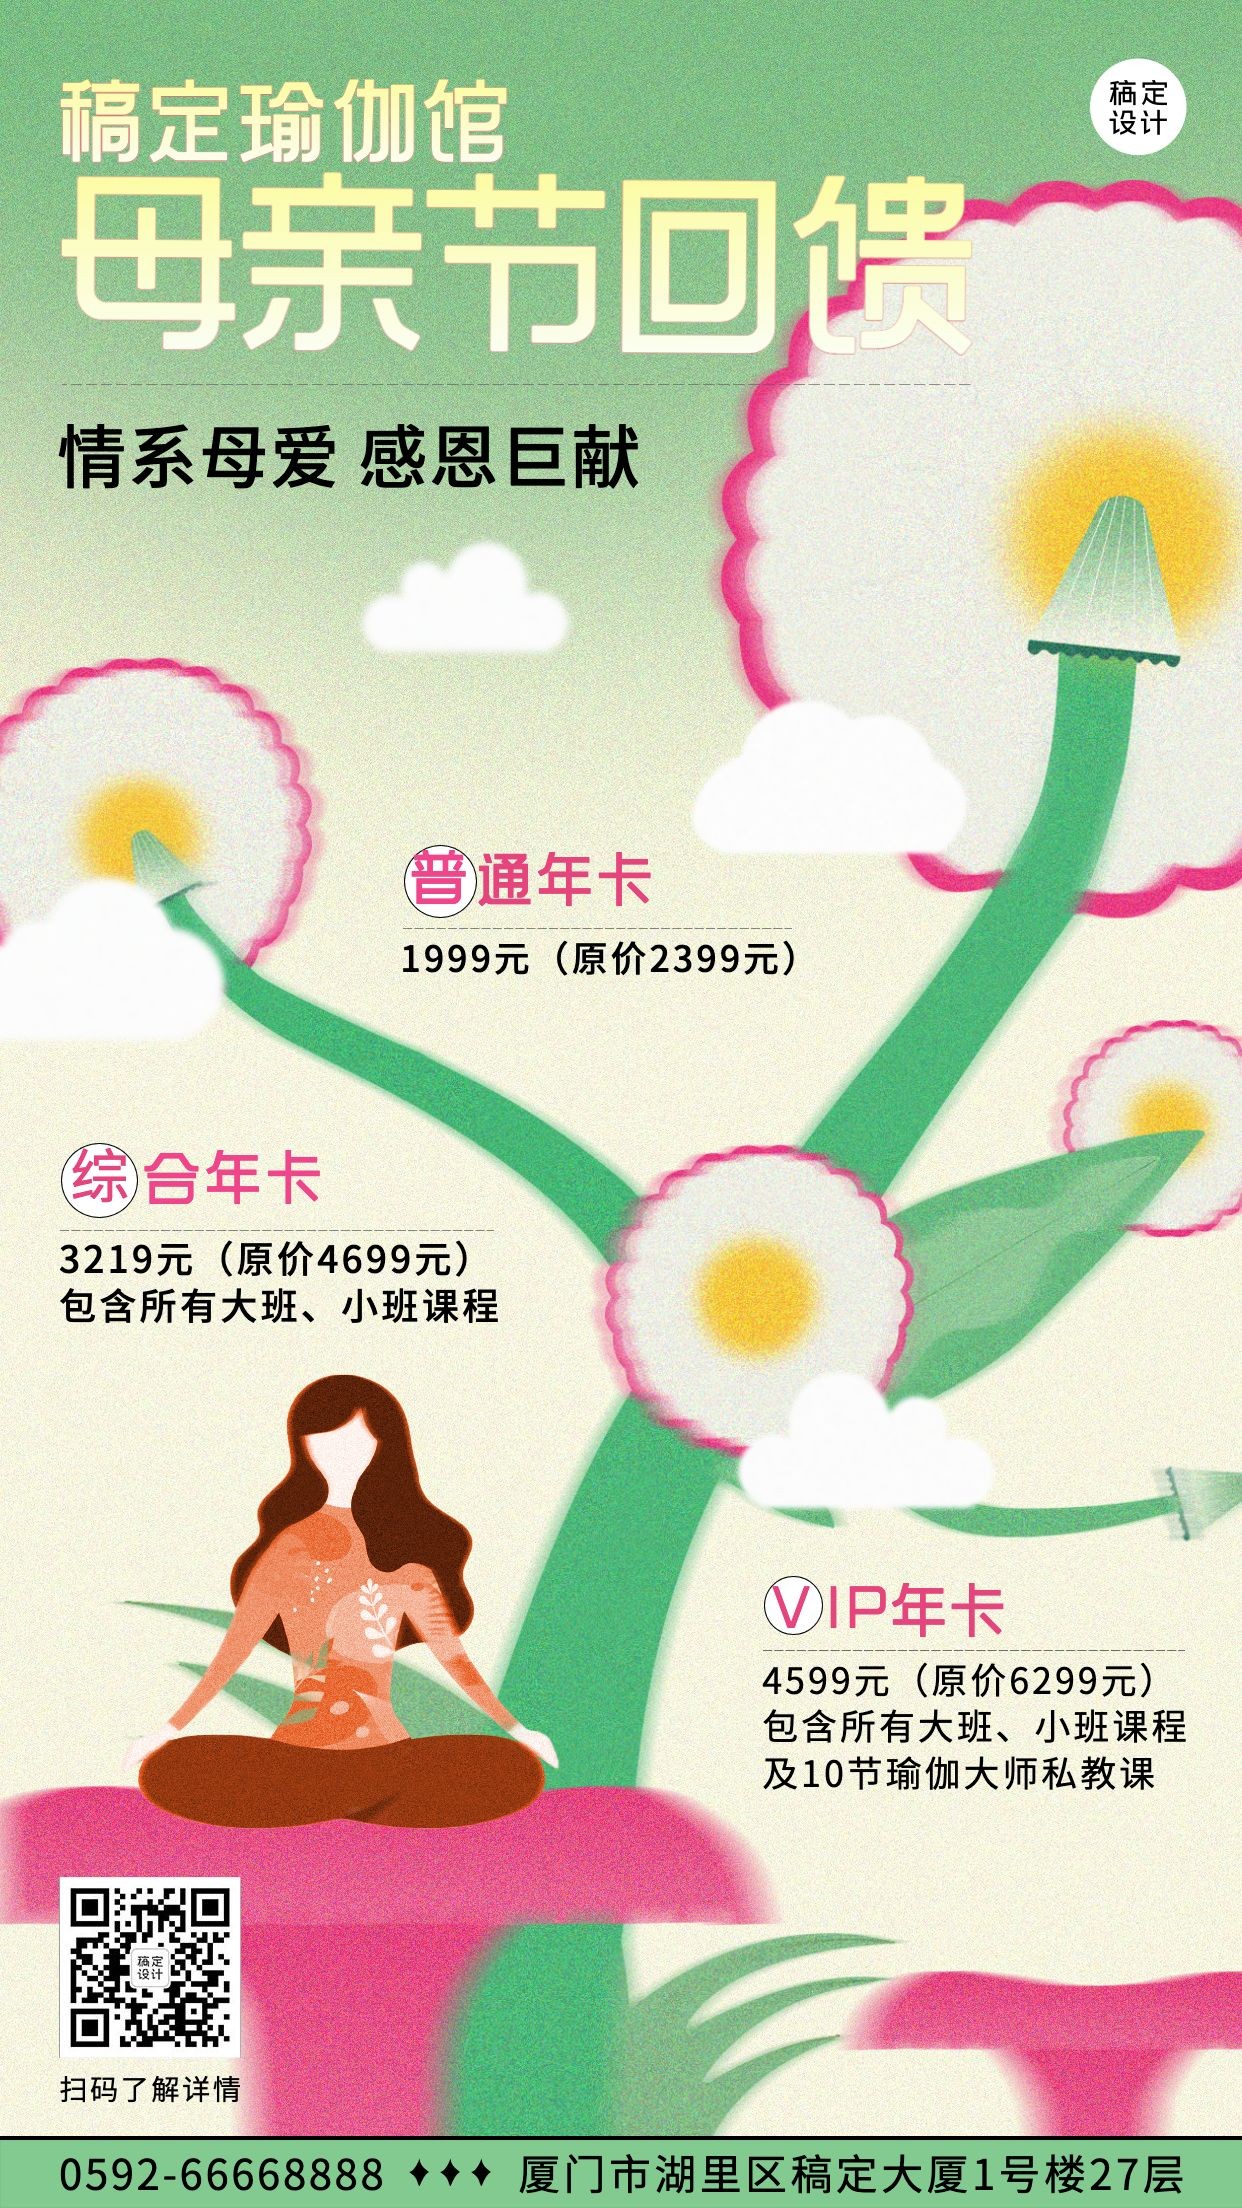 母亲节健身瑜伽节日营销宣传海报